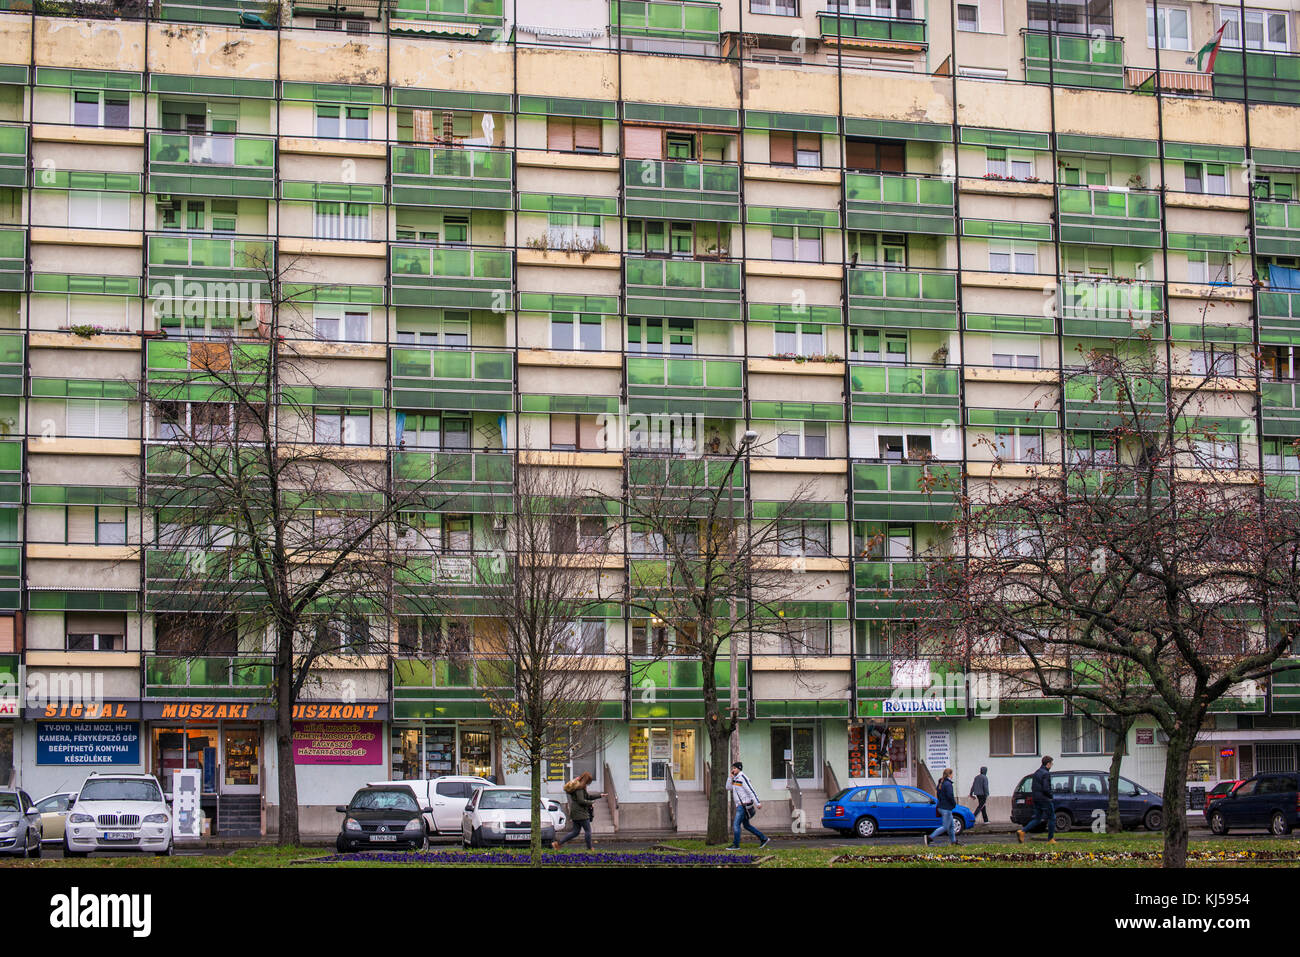 Soviet-era housing block, Debrecen, Hungary Stock Photo